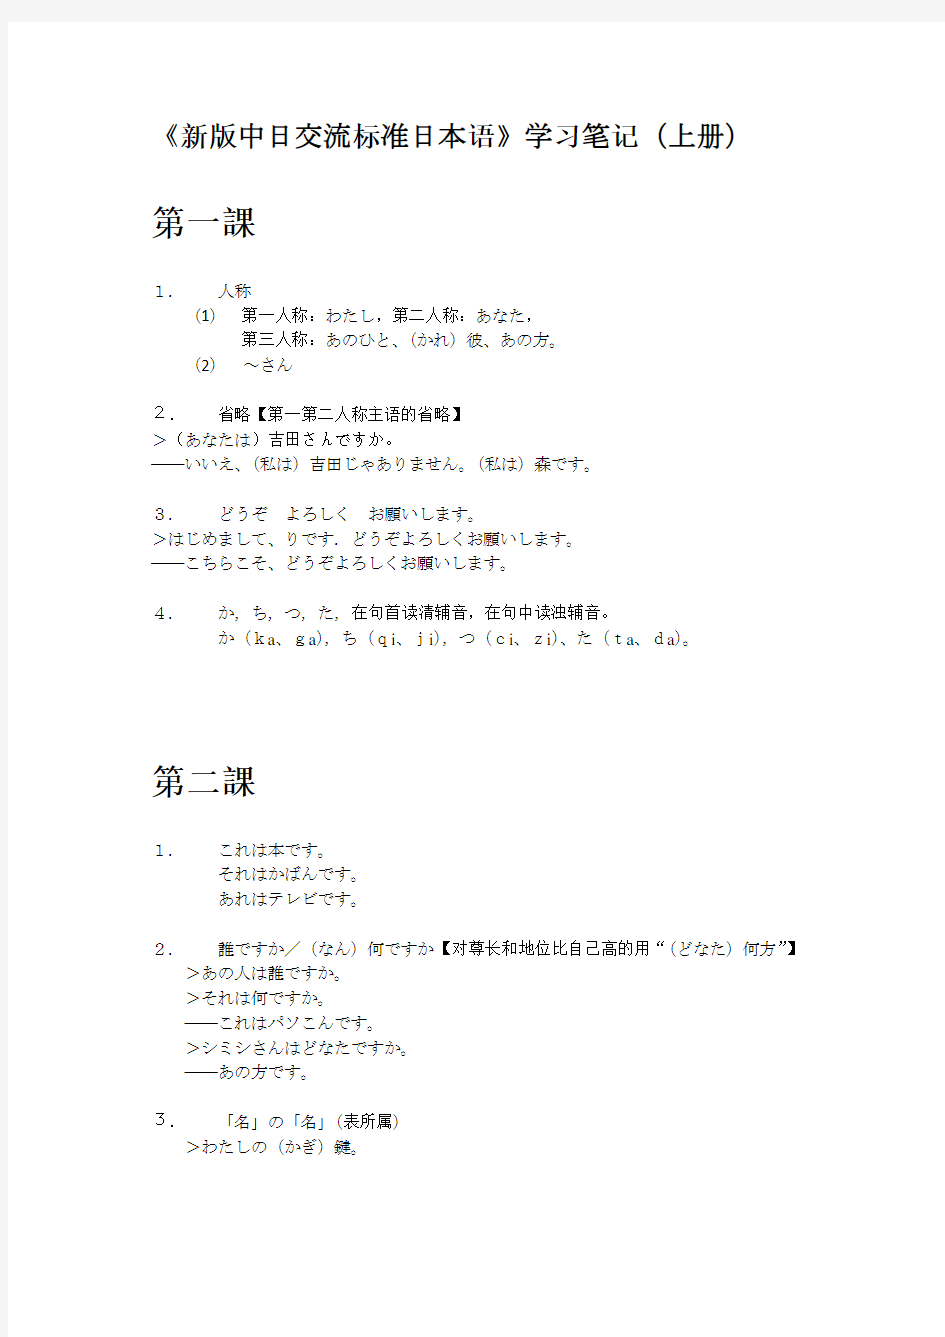 《新版中日交流标准日本语》学习笔记(上册)